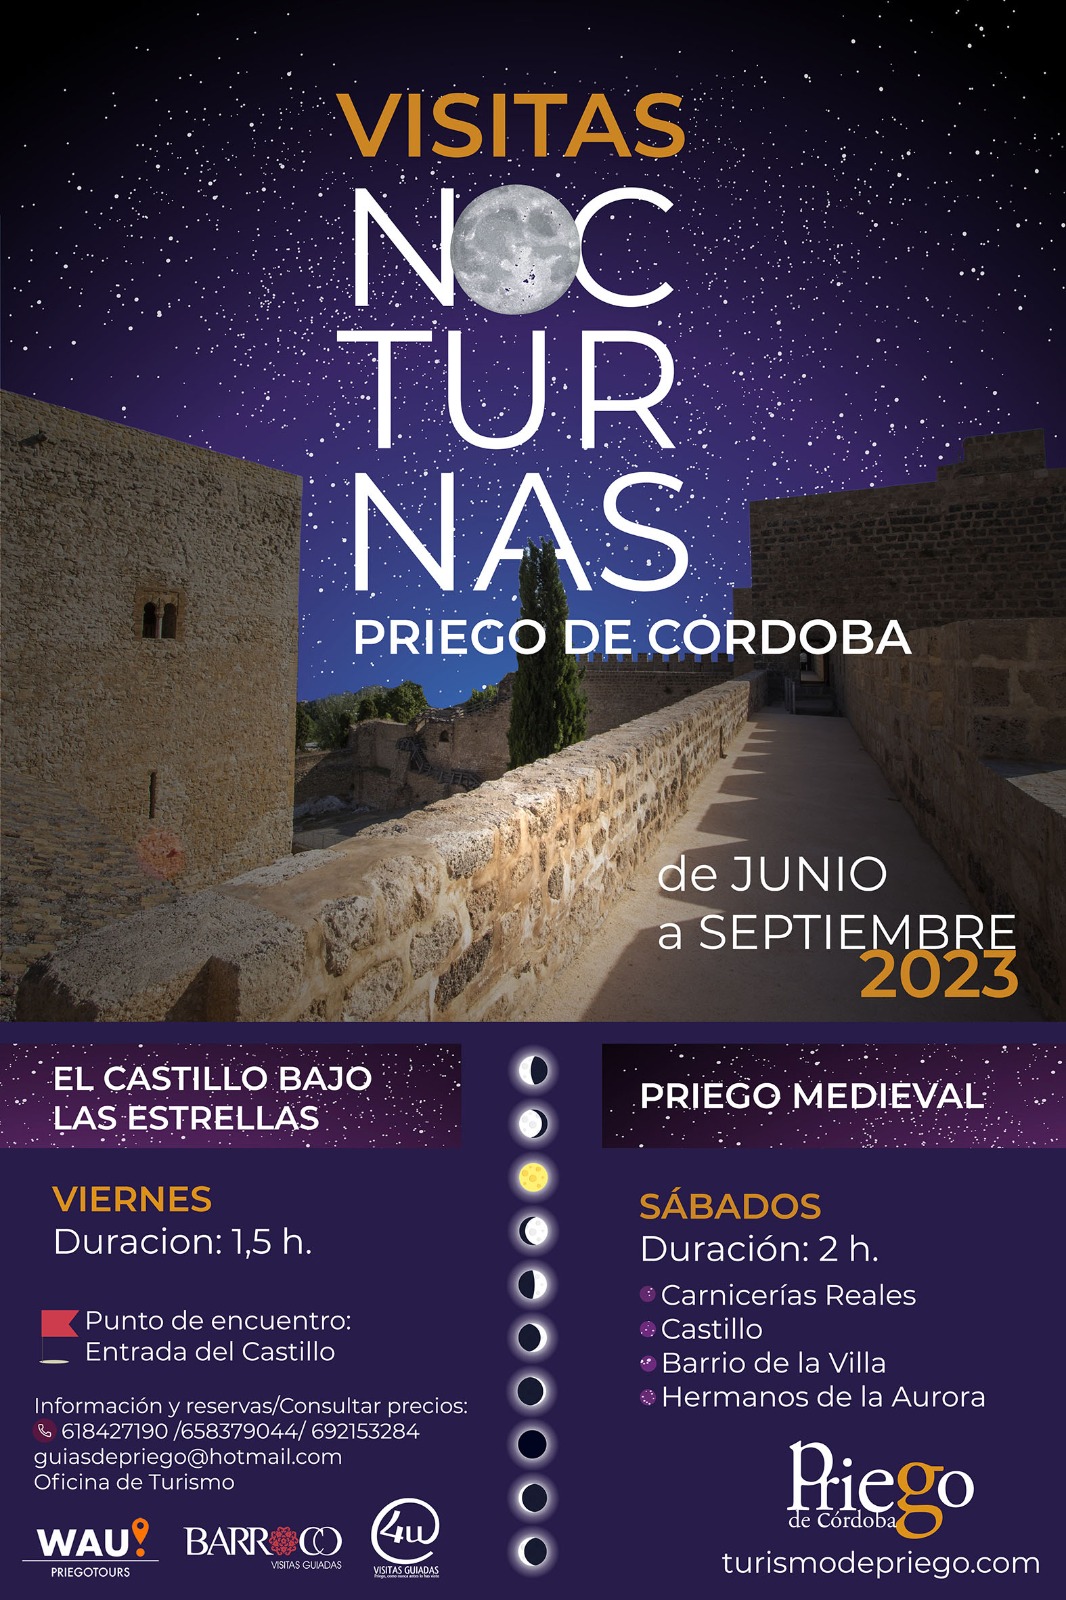 Visitas nocturnas en Priego de Córdoba